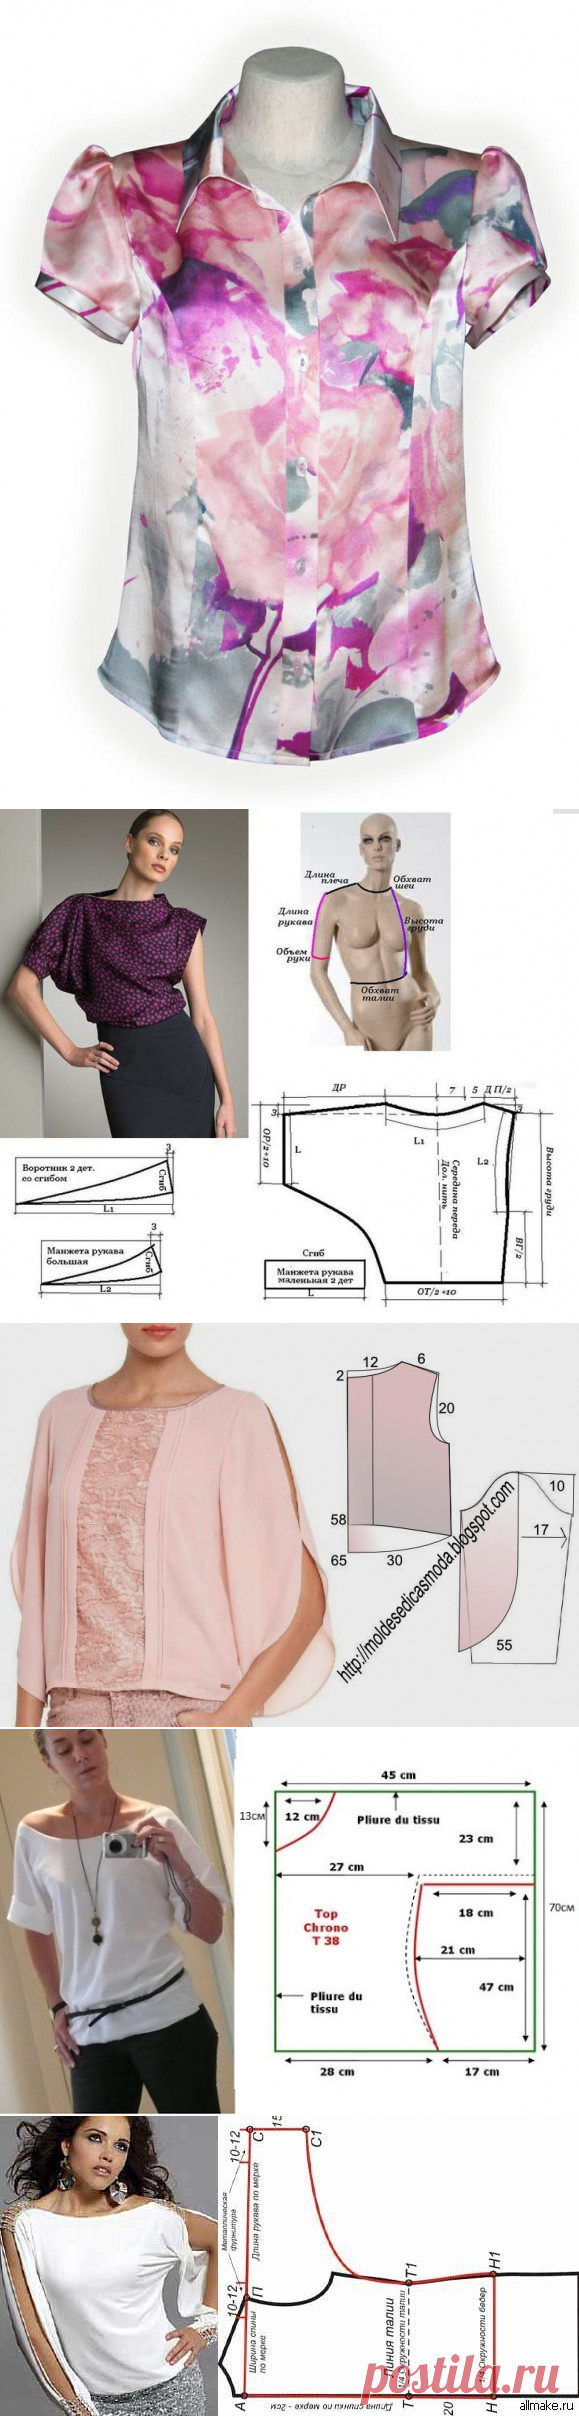 На пошив блузки расходуют 3 м шелка. Выкройка шелковой блузки. Блузка из шелка выкройка. Блуза из шелка выкройка. Простые блузки из шелка выкройка.